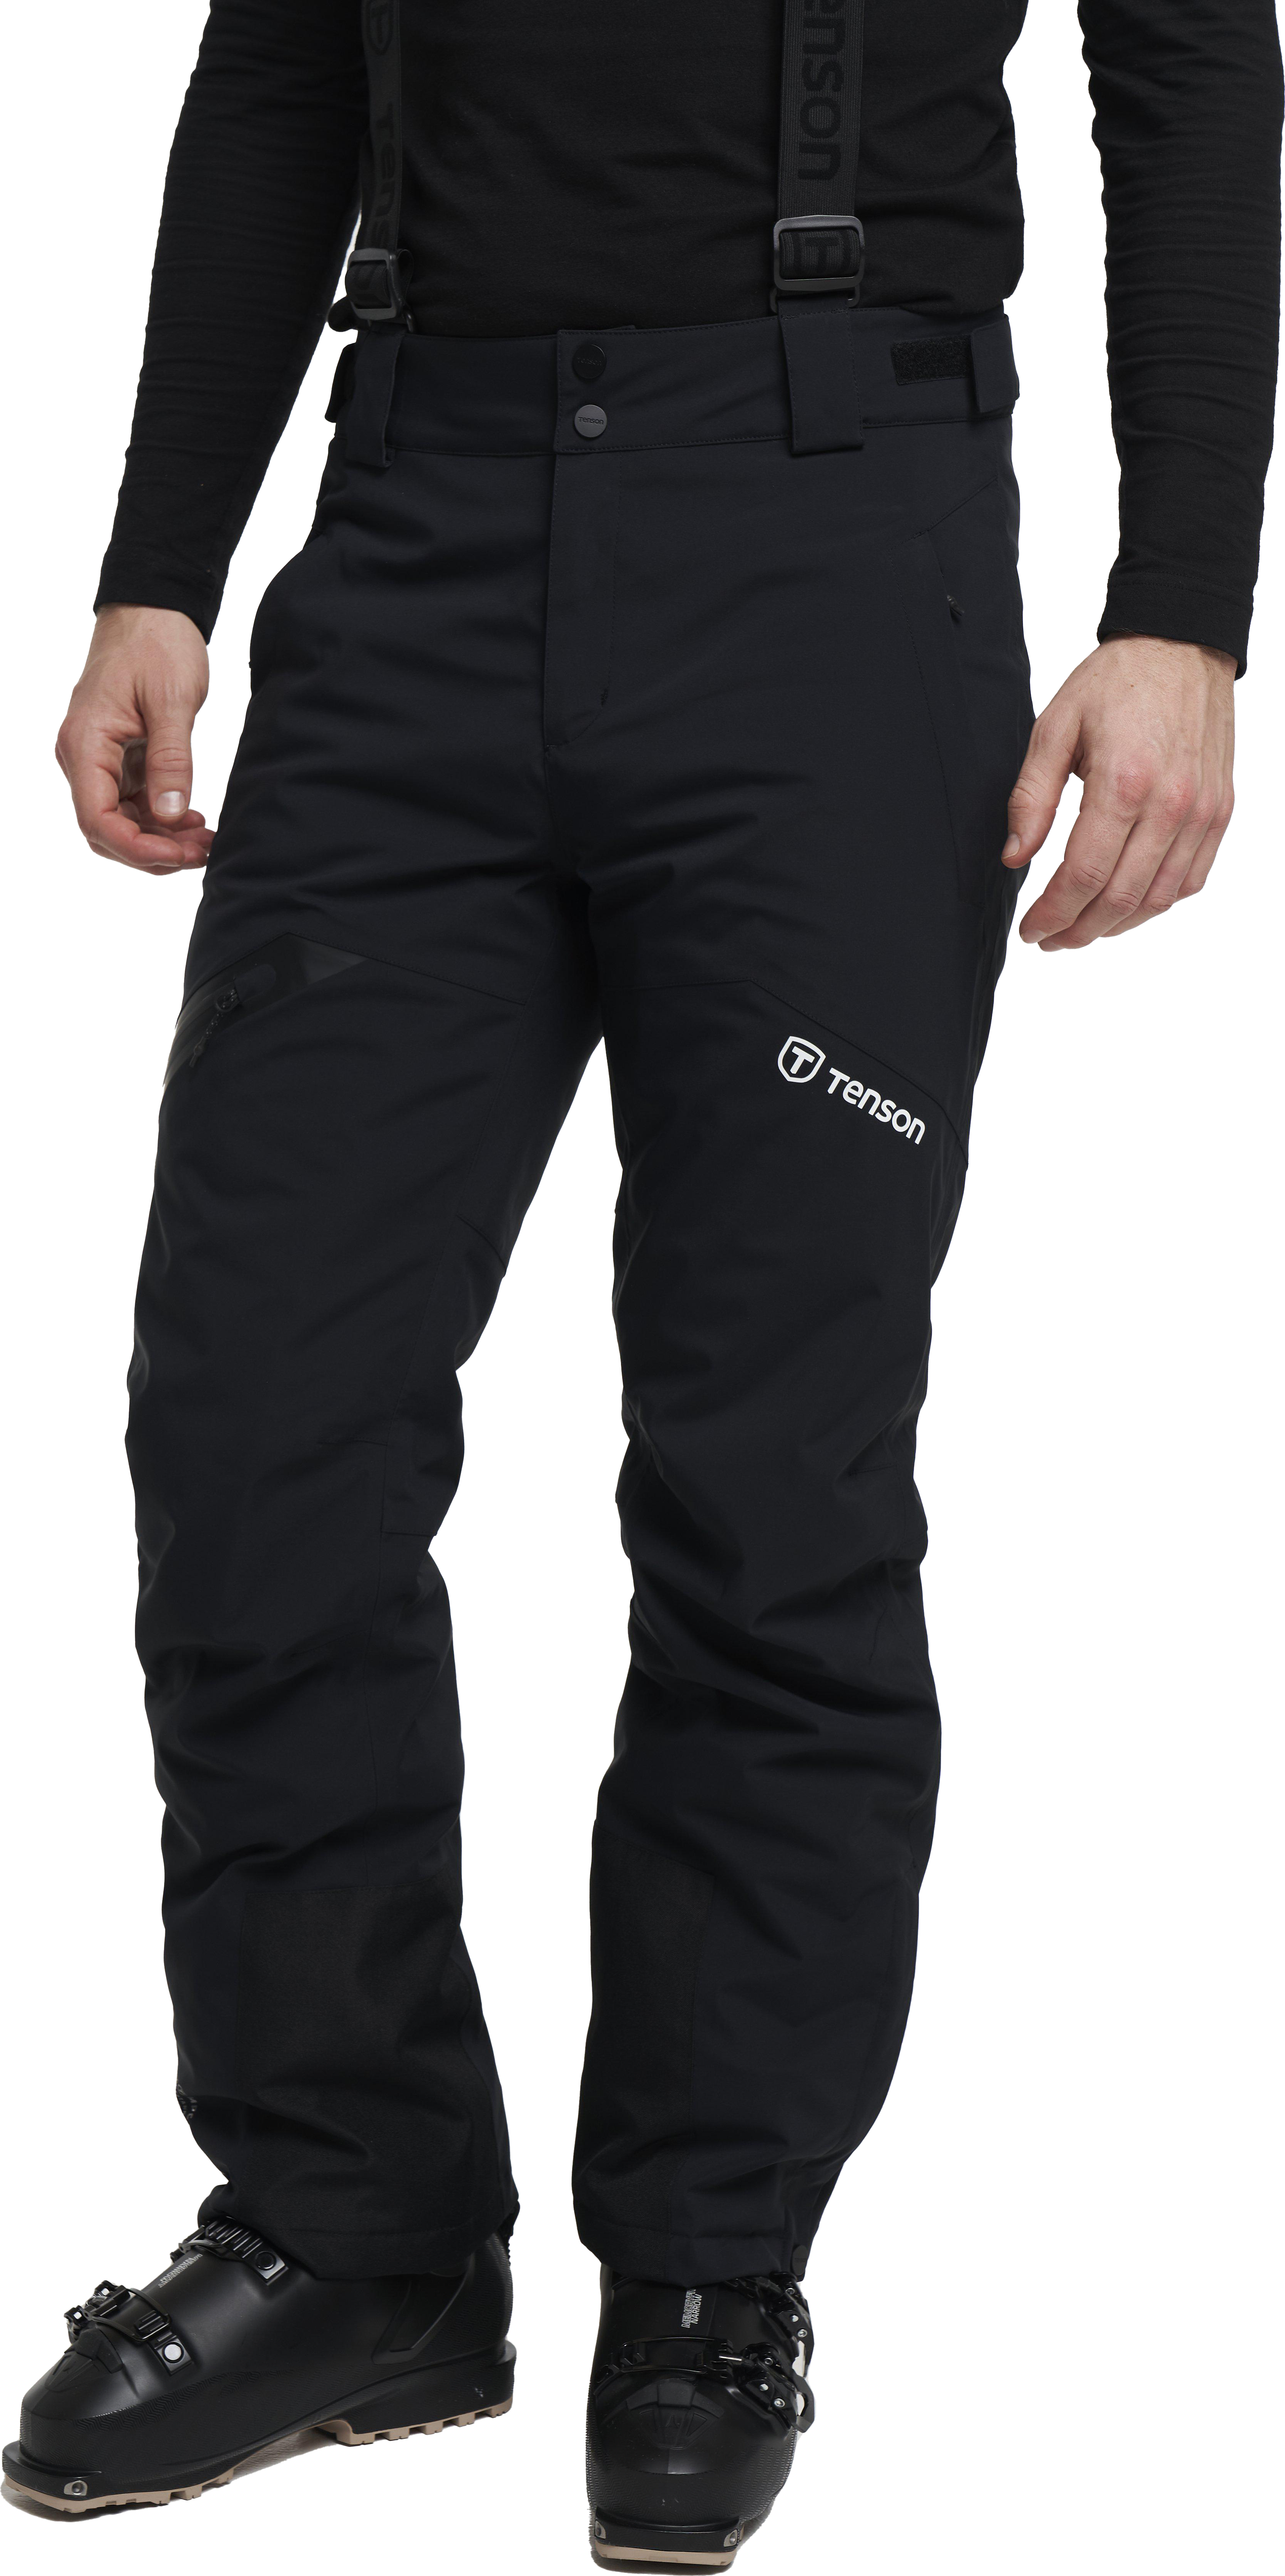 Tenson Men’s Core Ski Pants Black